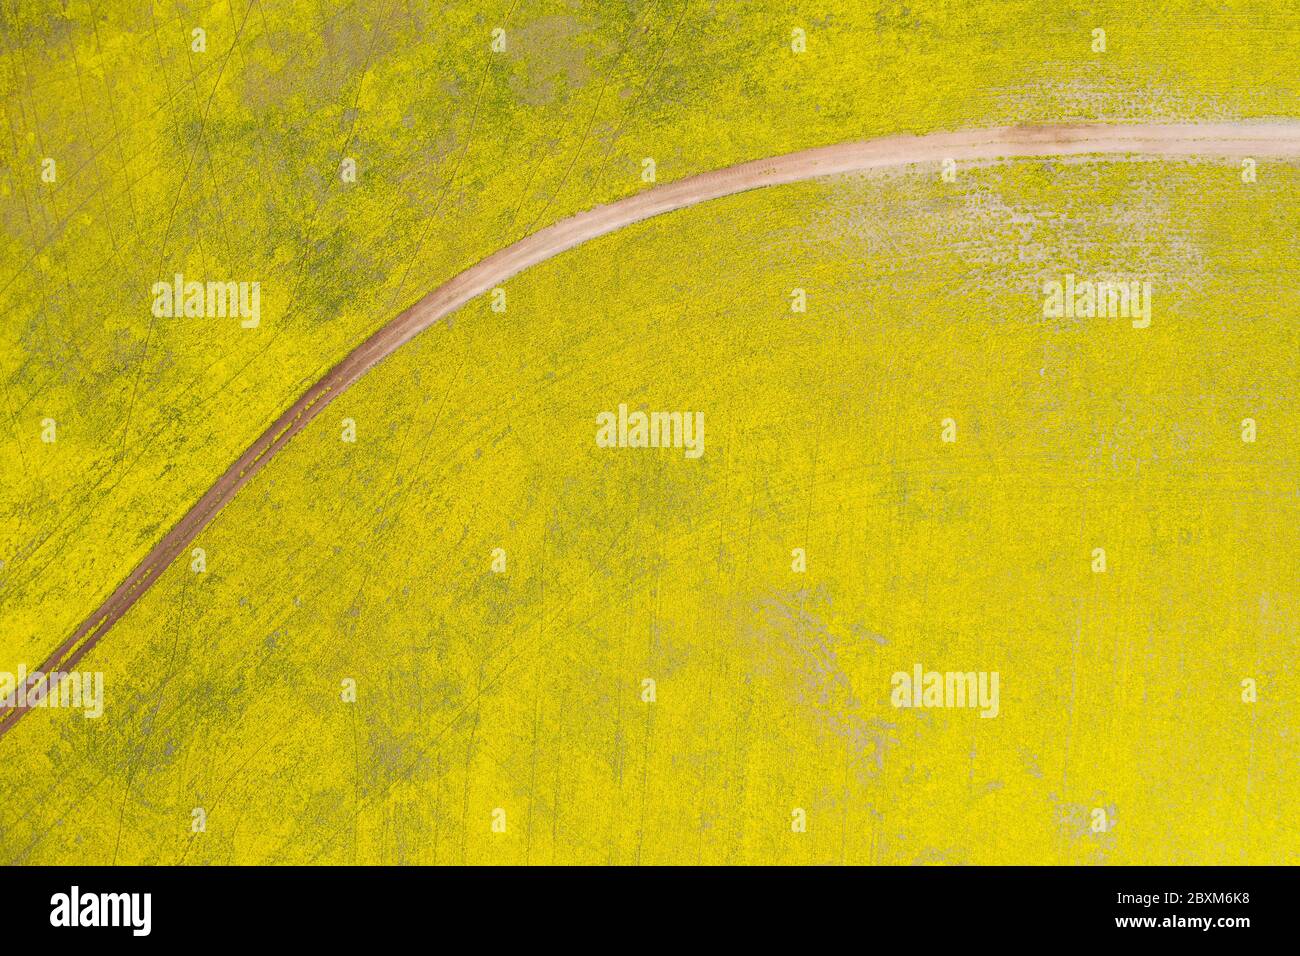 Résumé vue aérienne en haut d'une route à travers les champs de canola dans la riche région agricole de l'Australie occidentale Banque D'Images